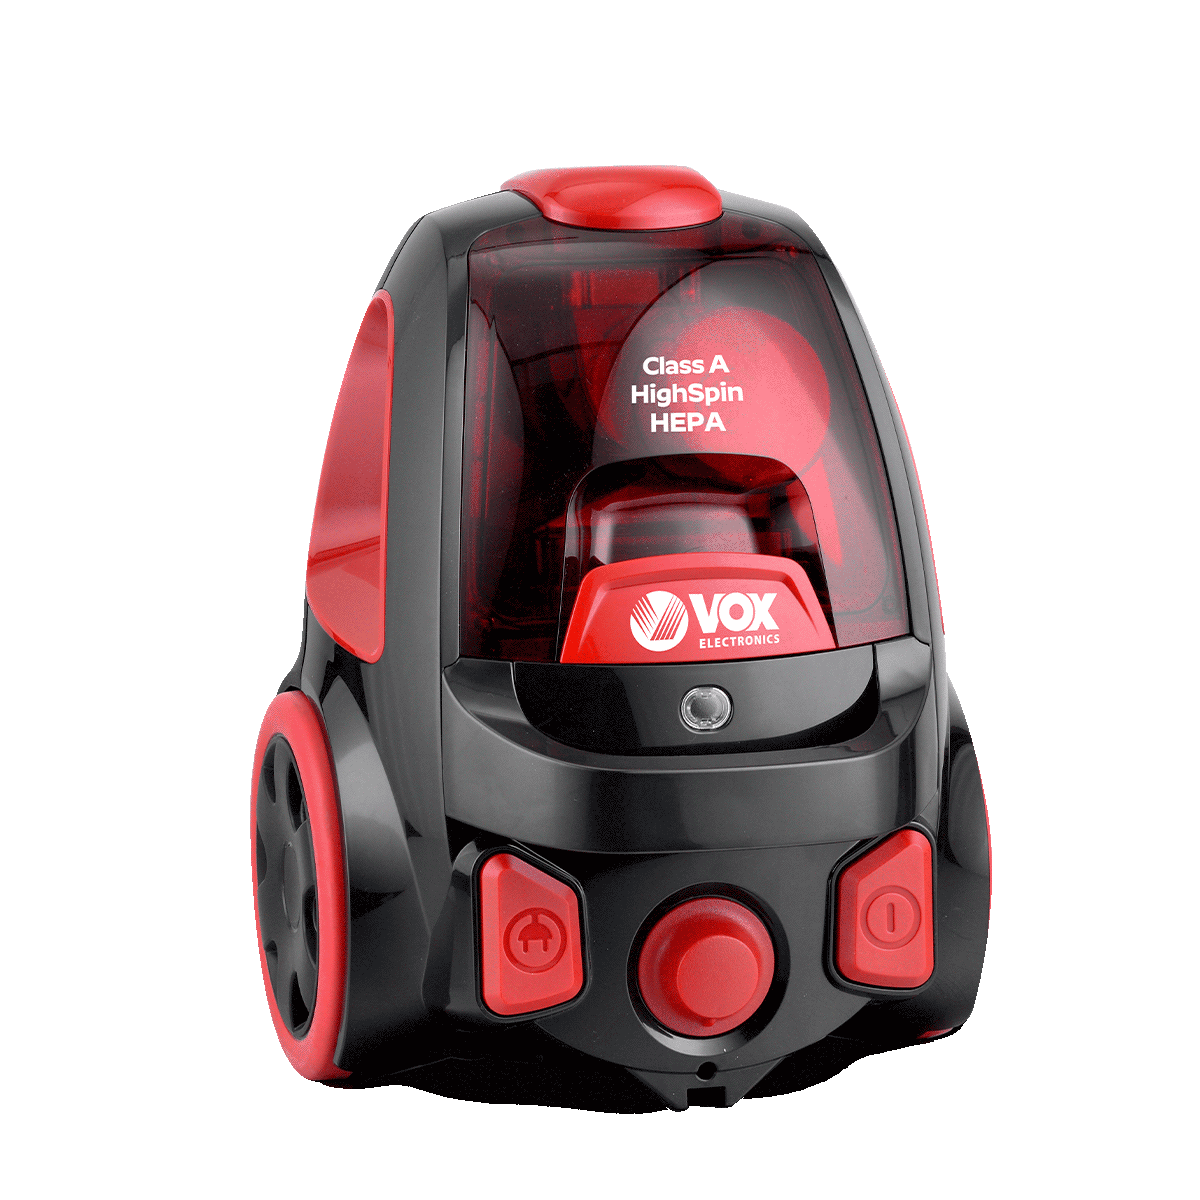 Vacuum cleaner SL159R 